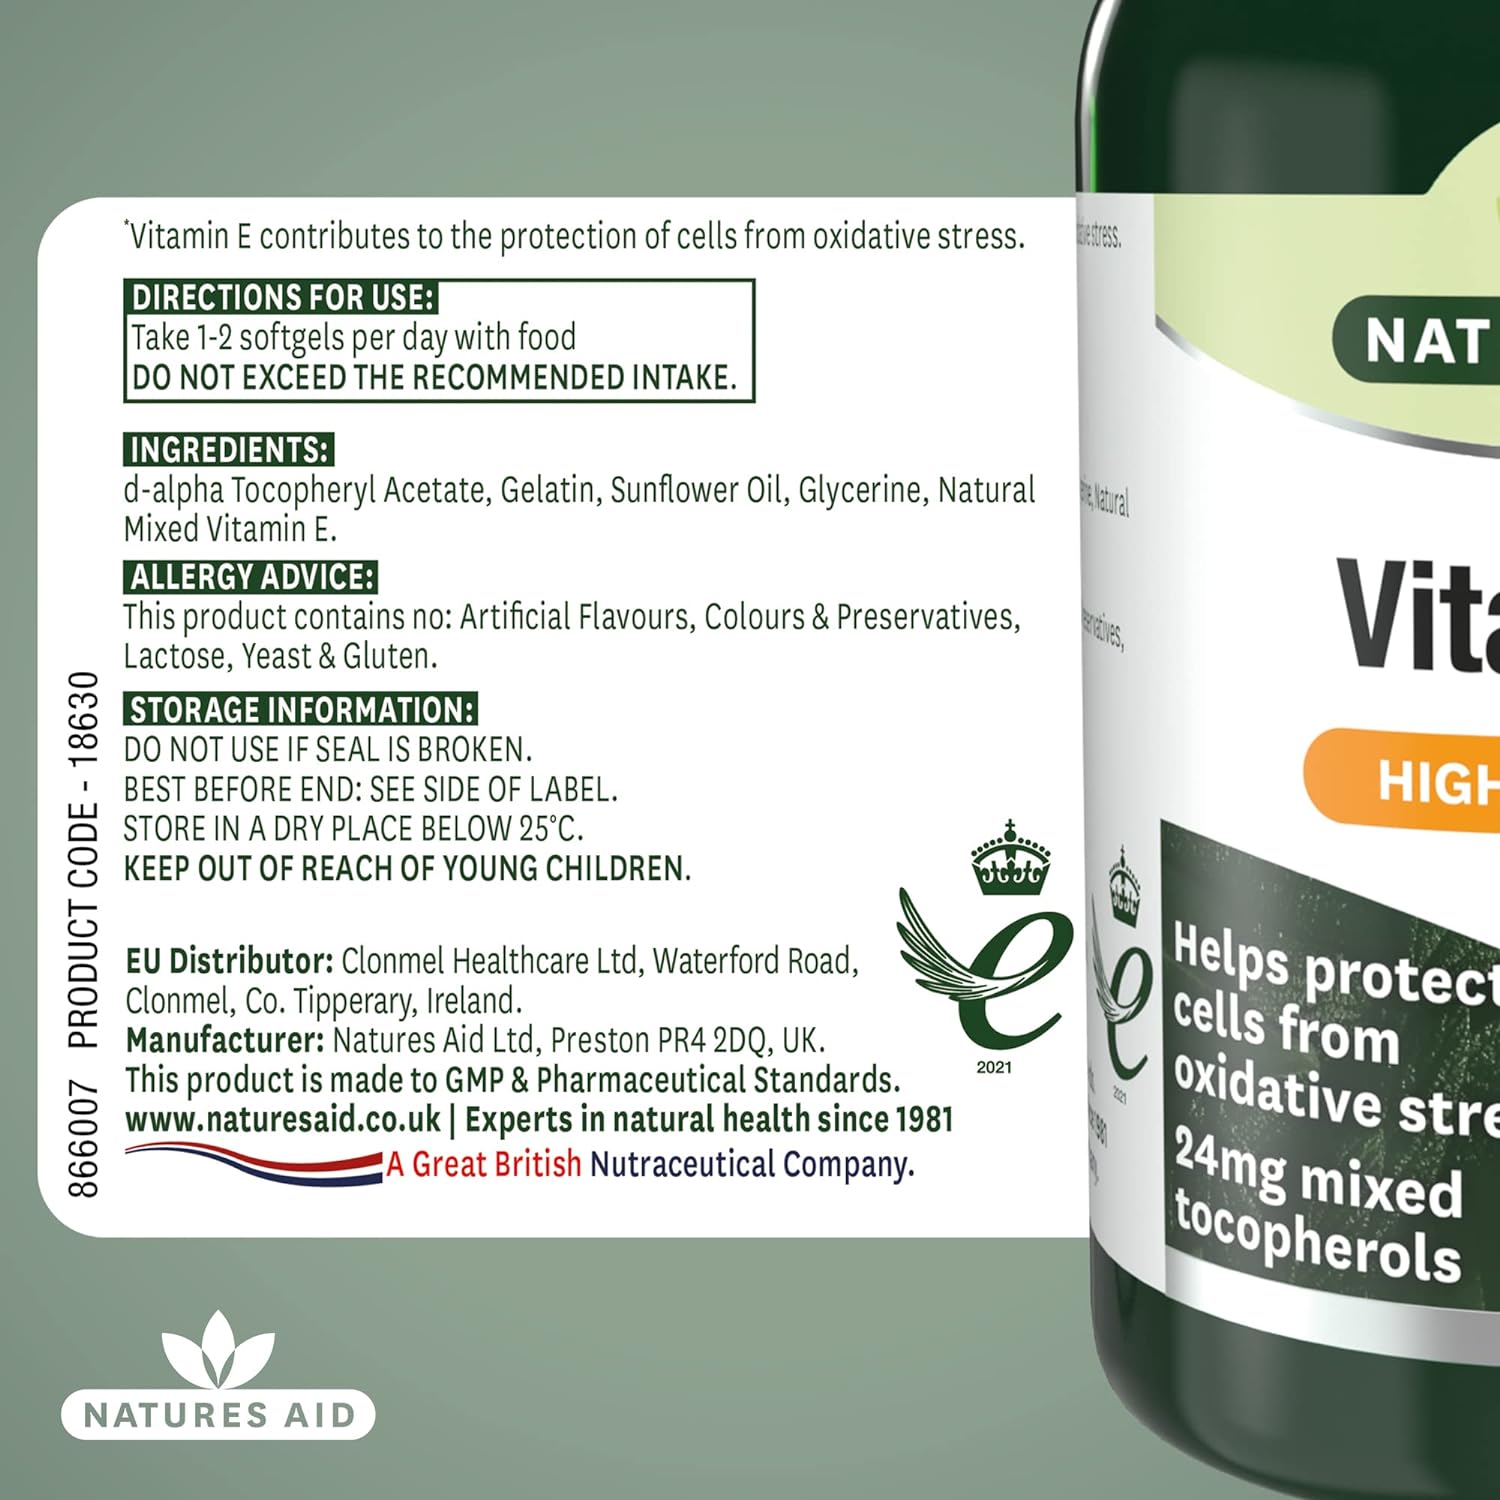 Vitamin E 400iu 60 Softgels